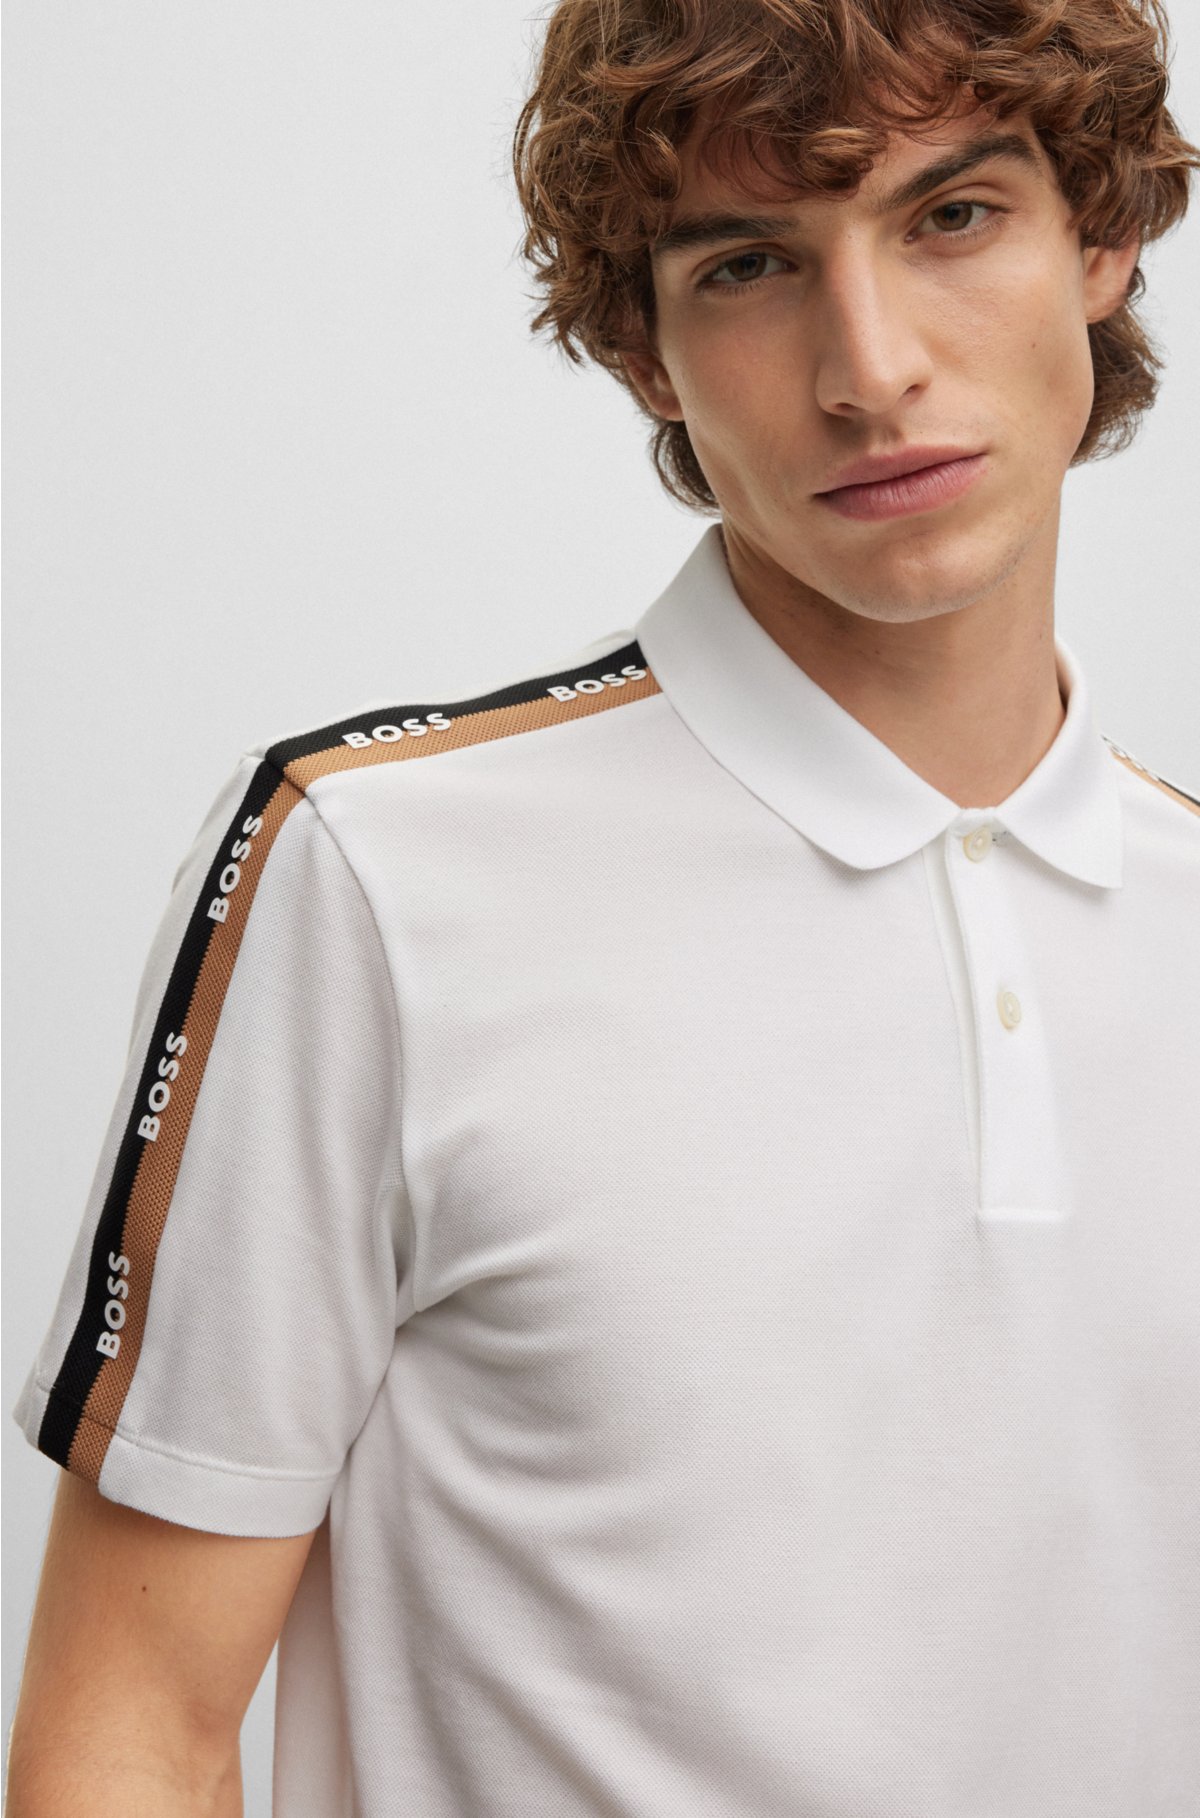 White Web-stripe cotton-jersey polo shirt, Gucci